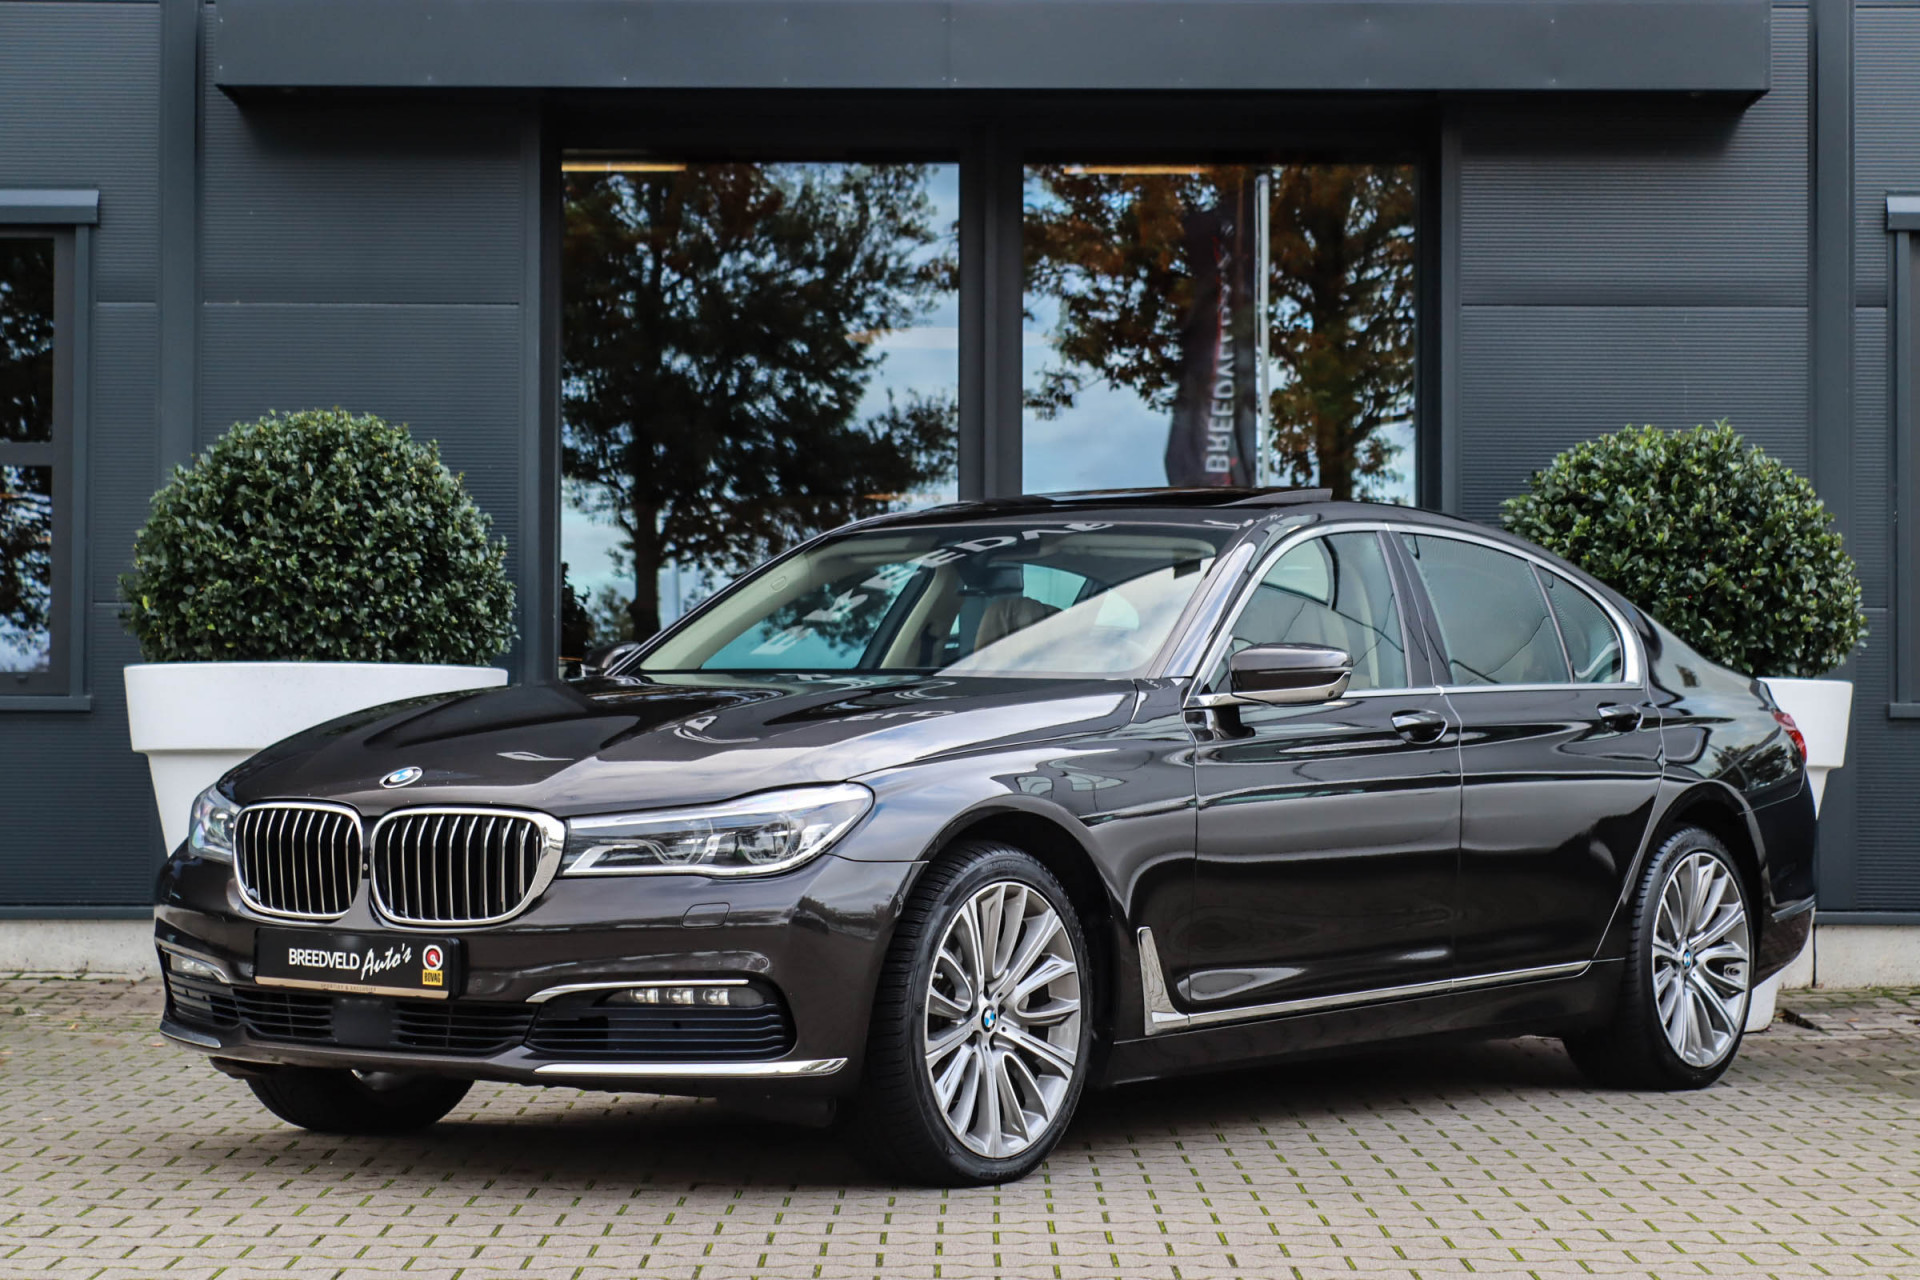 Passend Nauwgezet Voorspeller Droom-occasion: stijlvolle tweedehands BMW 7 Serie uit 2015